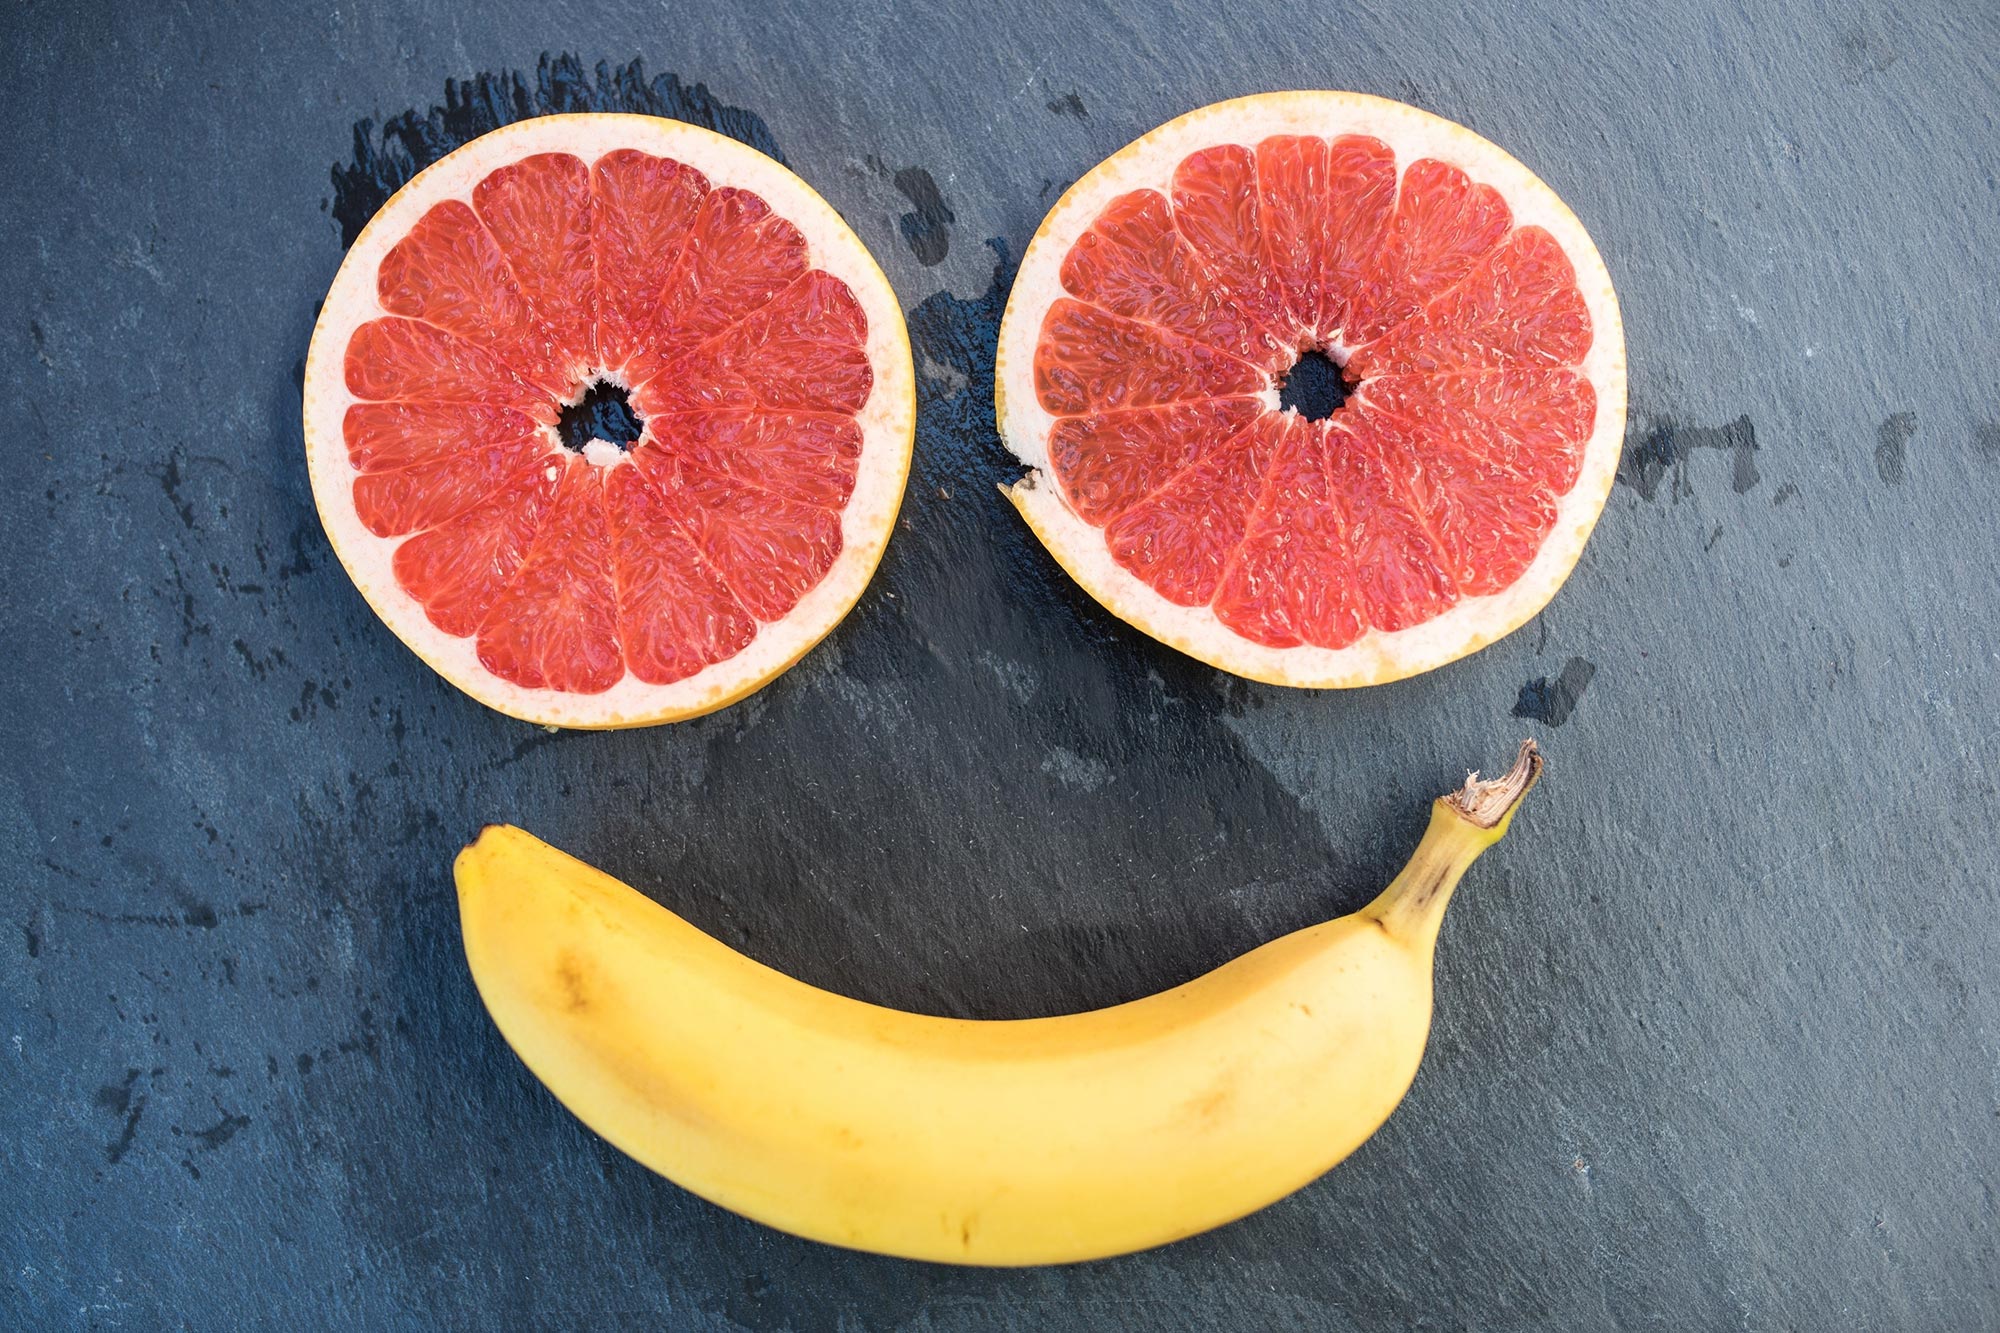 La recherche montre que manger des fruits fréquemment peut réduire la dépression